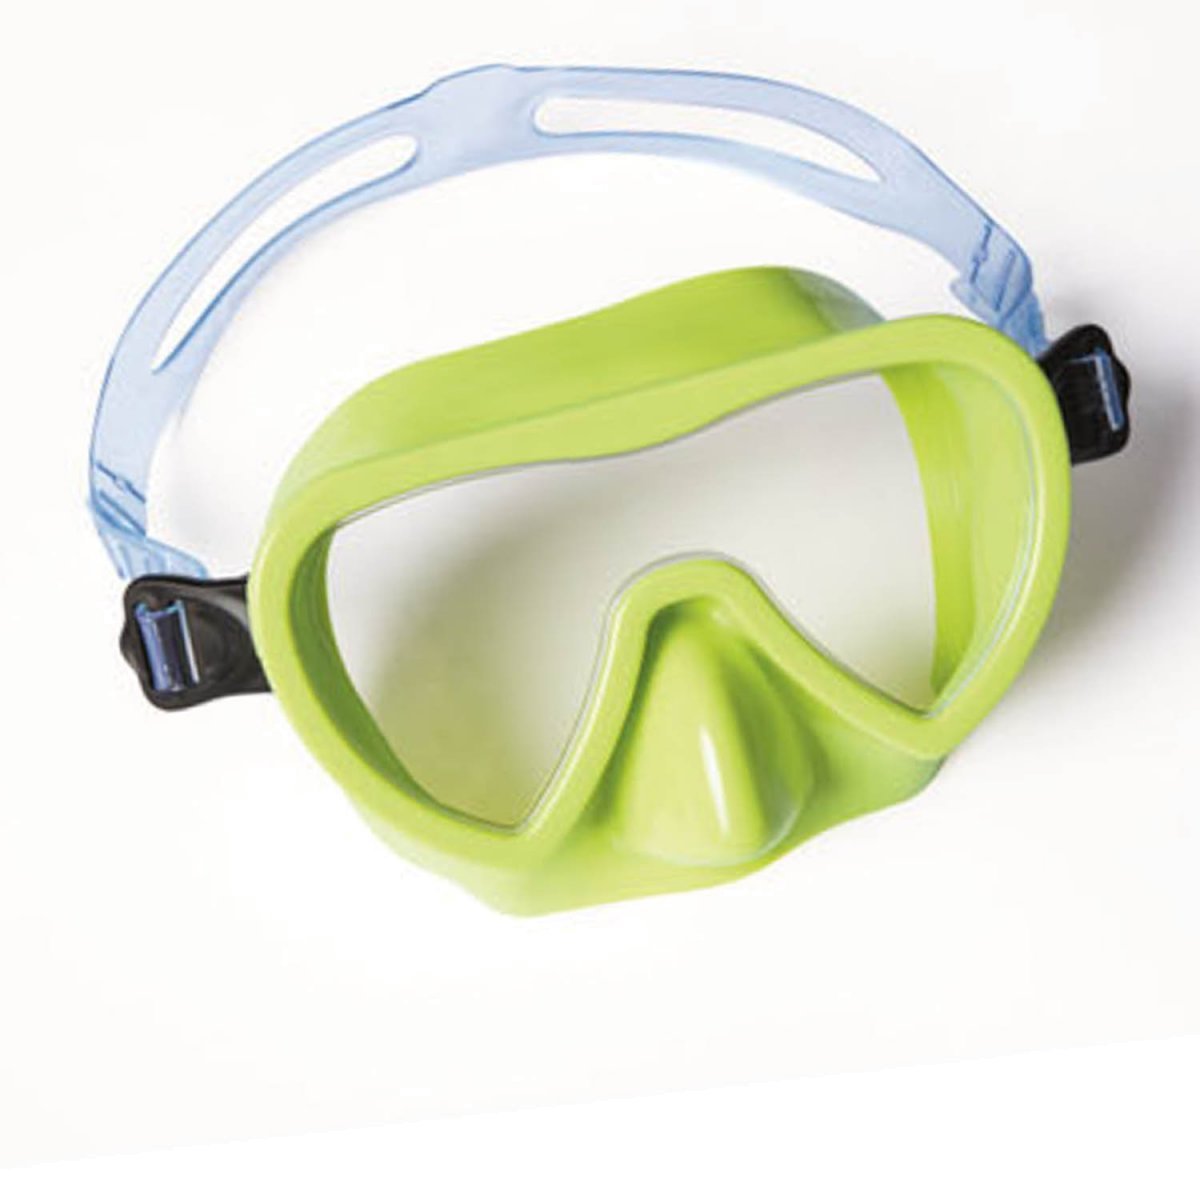 Лучшие маски для плавания. 55916 Intex. 55916 Маска для плаванья Sea scan. Маска для ныряния Bestway. 55916 Маска для плавания Sea scan от 8 лет 2 цв..